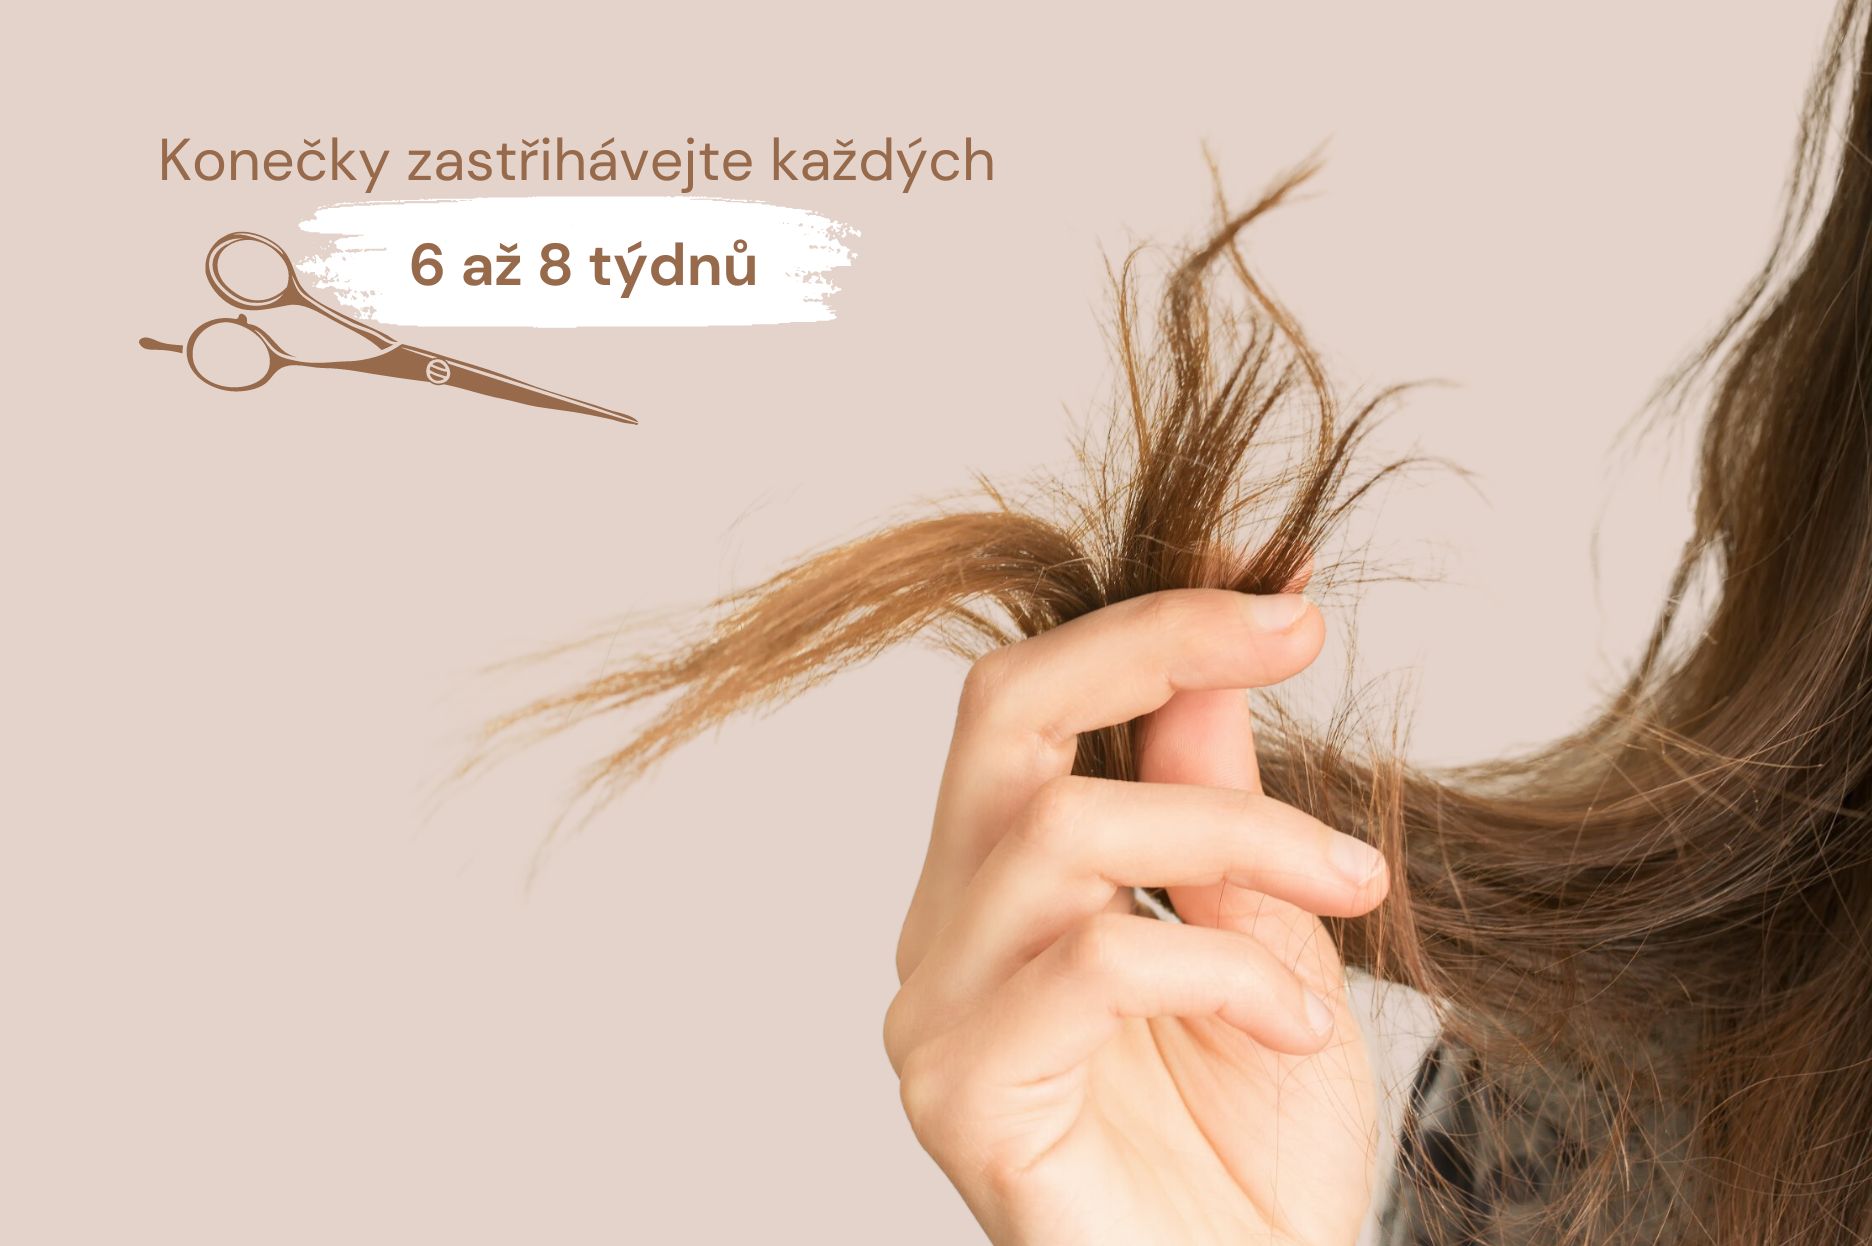 Zastřihujte konečky vlasů 6 až 8 týdnů